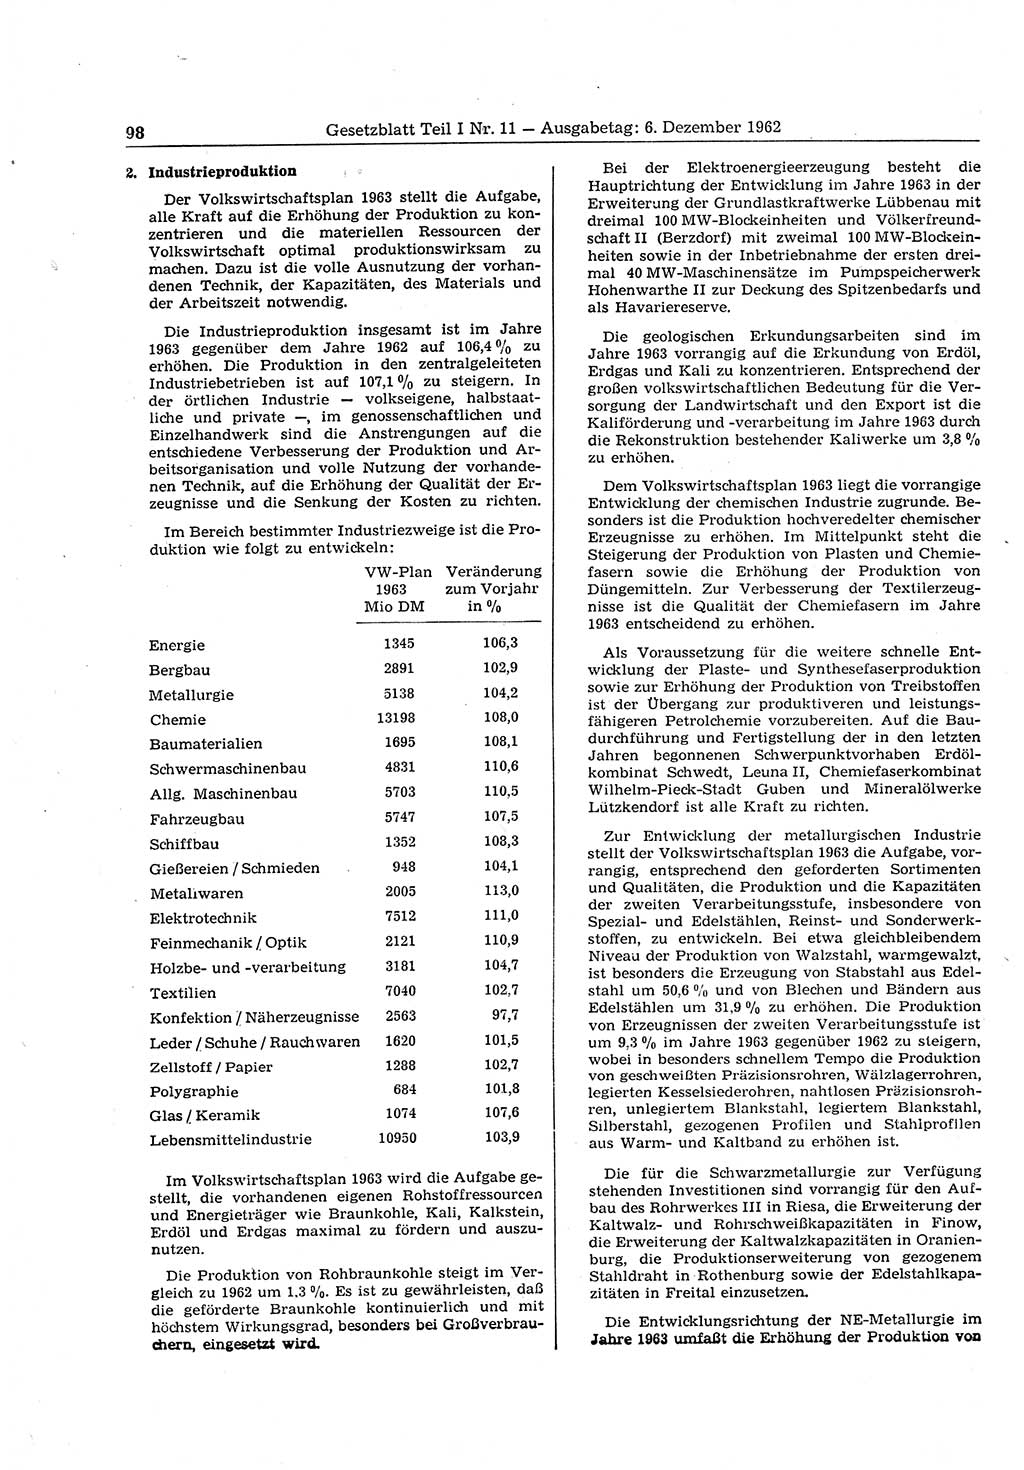 Gesetzblatt (GBl.) der Deutschen Demokratischen Republik (DDR) Teil Ⅰ 1962, Seite 98 (GBl. DDR Ⅰ 1962, S. 98)